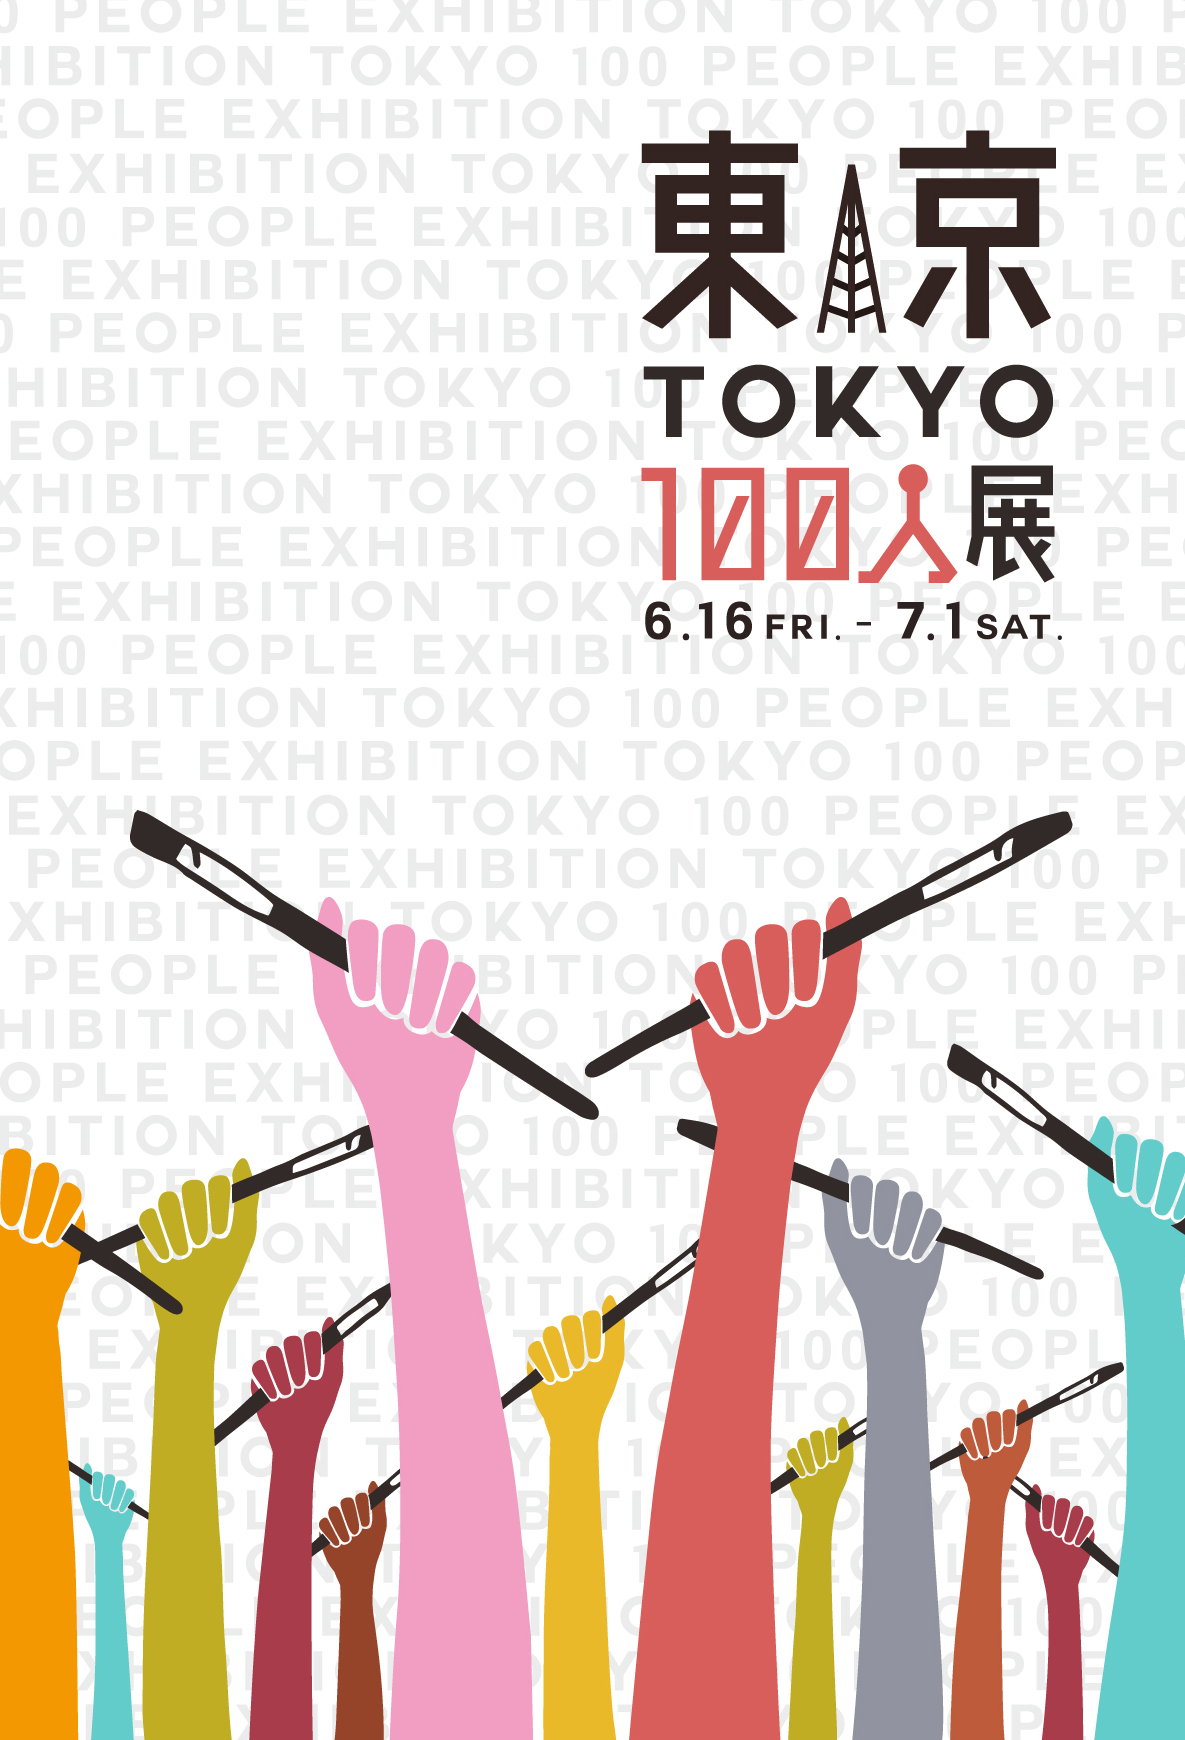 オリンピックに向けて皆で盛り上がろう！「東京」を表現したグループ展『東京100人展』【今週のおすすめ